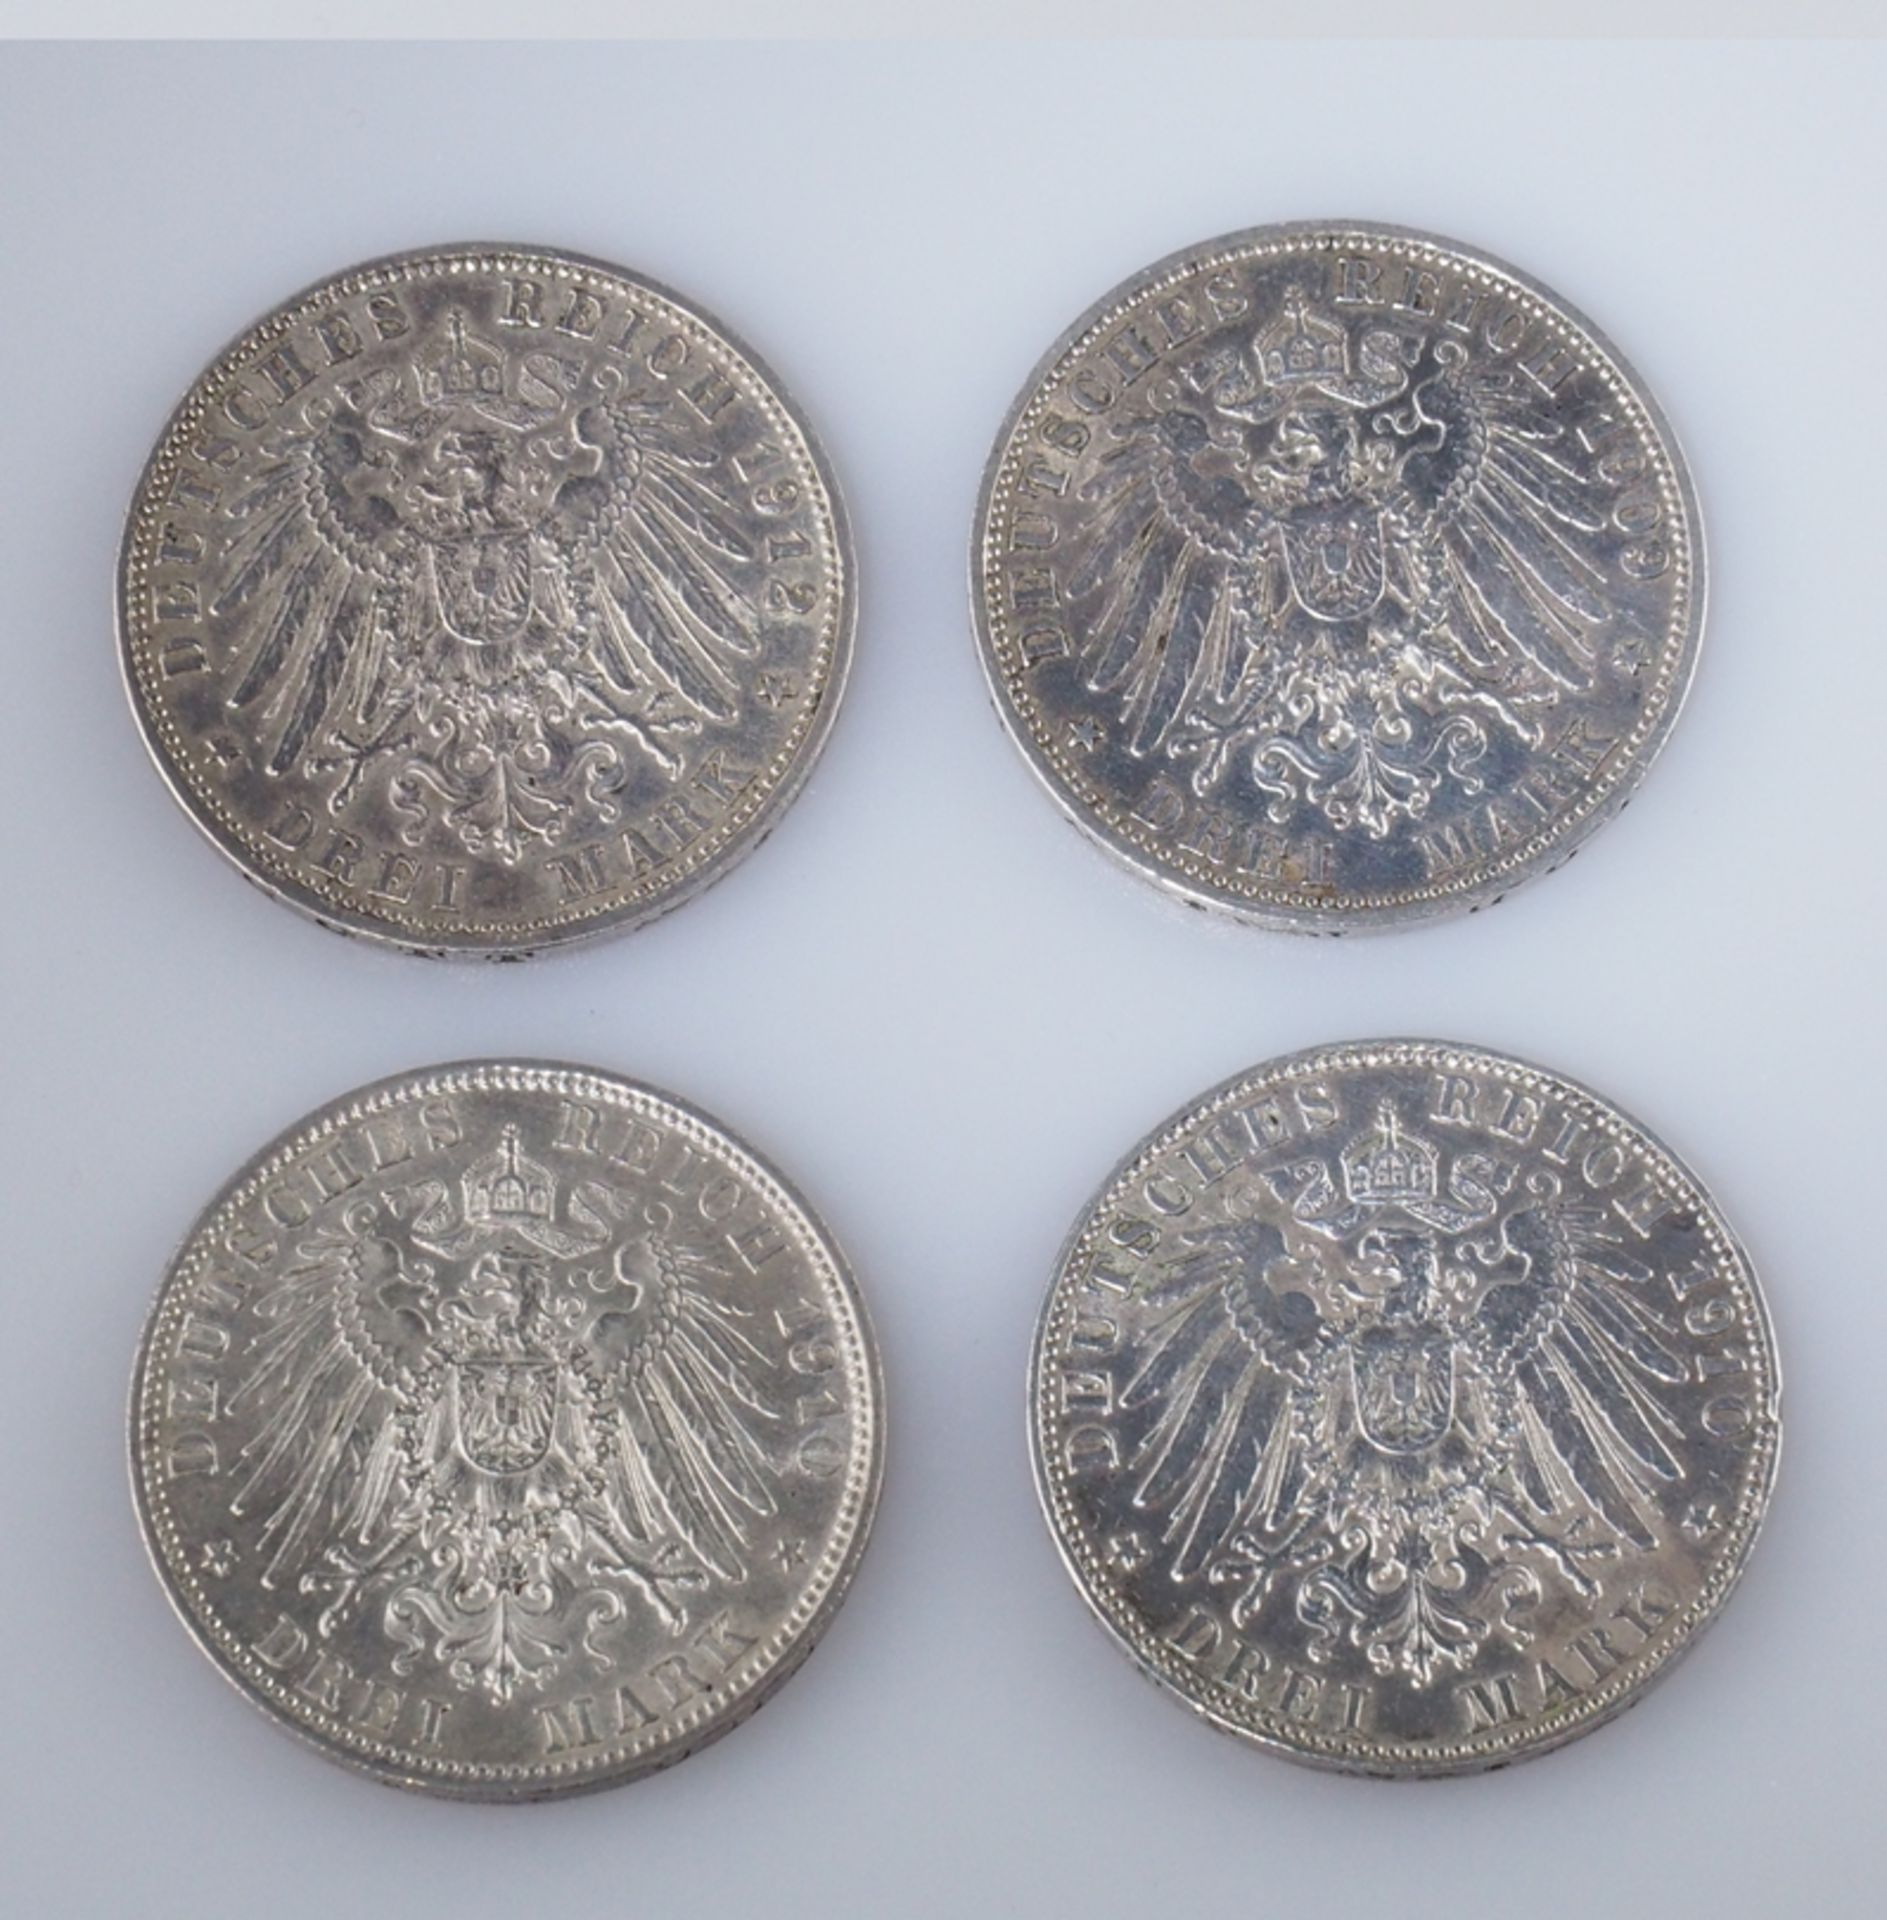 Bayern. Drei Mark. Vier Münzen. Ein Stück 1909, zwei Stück 1910, ein Stück 1912. J 47 - Image 2 of 2